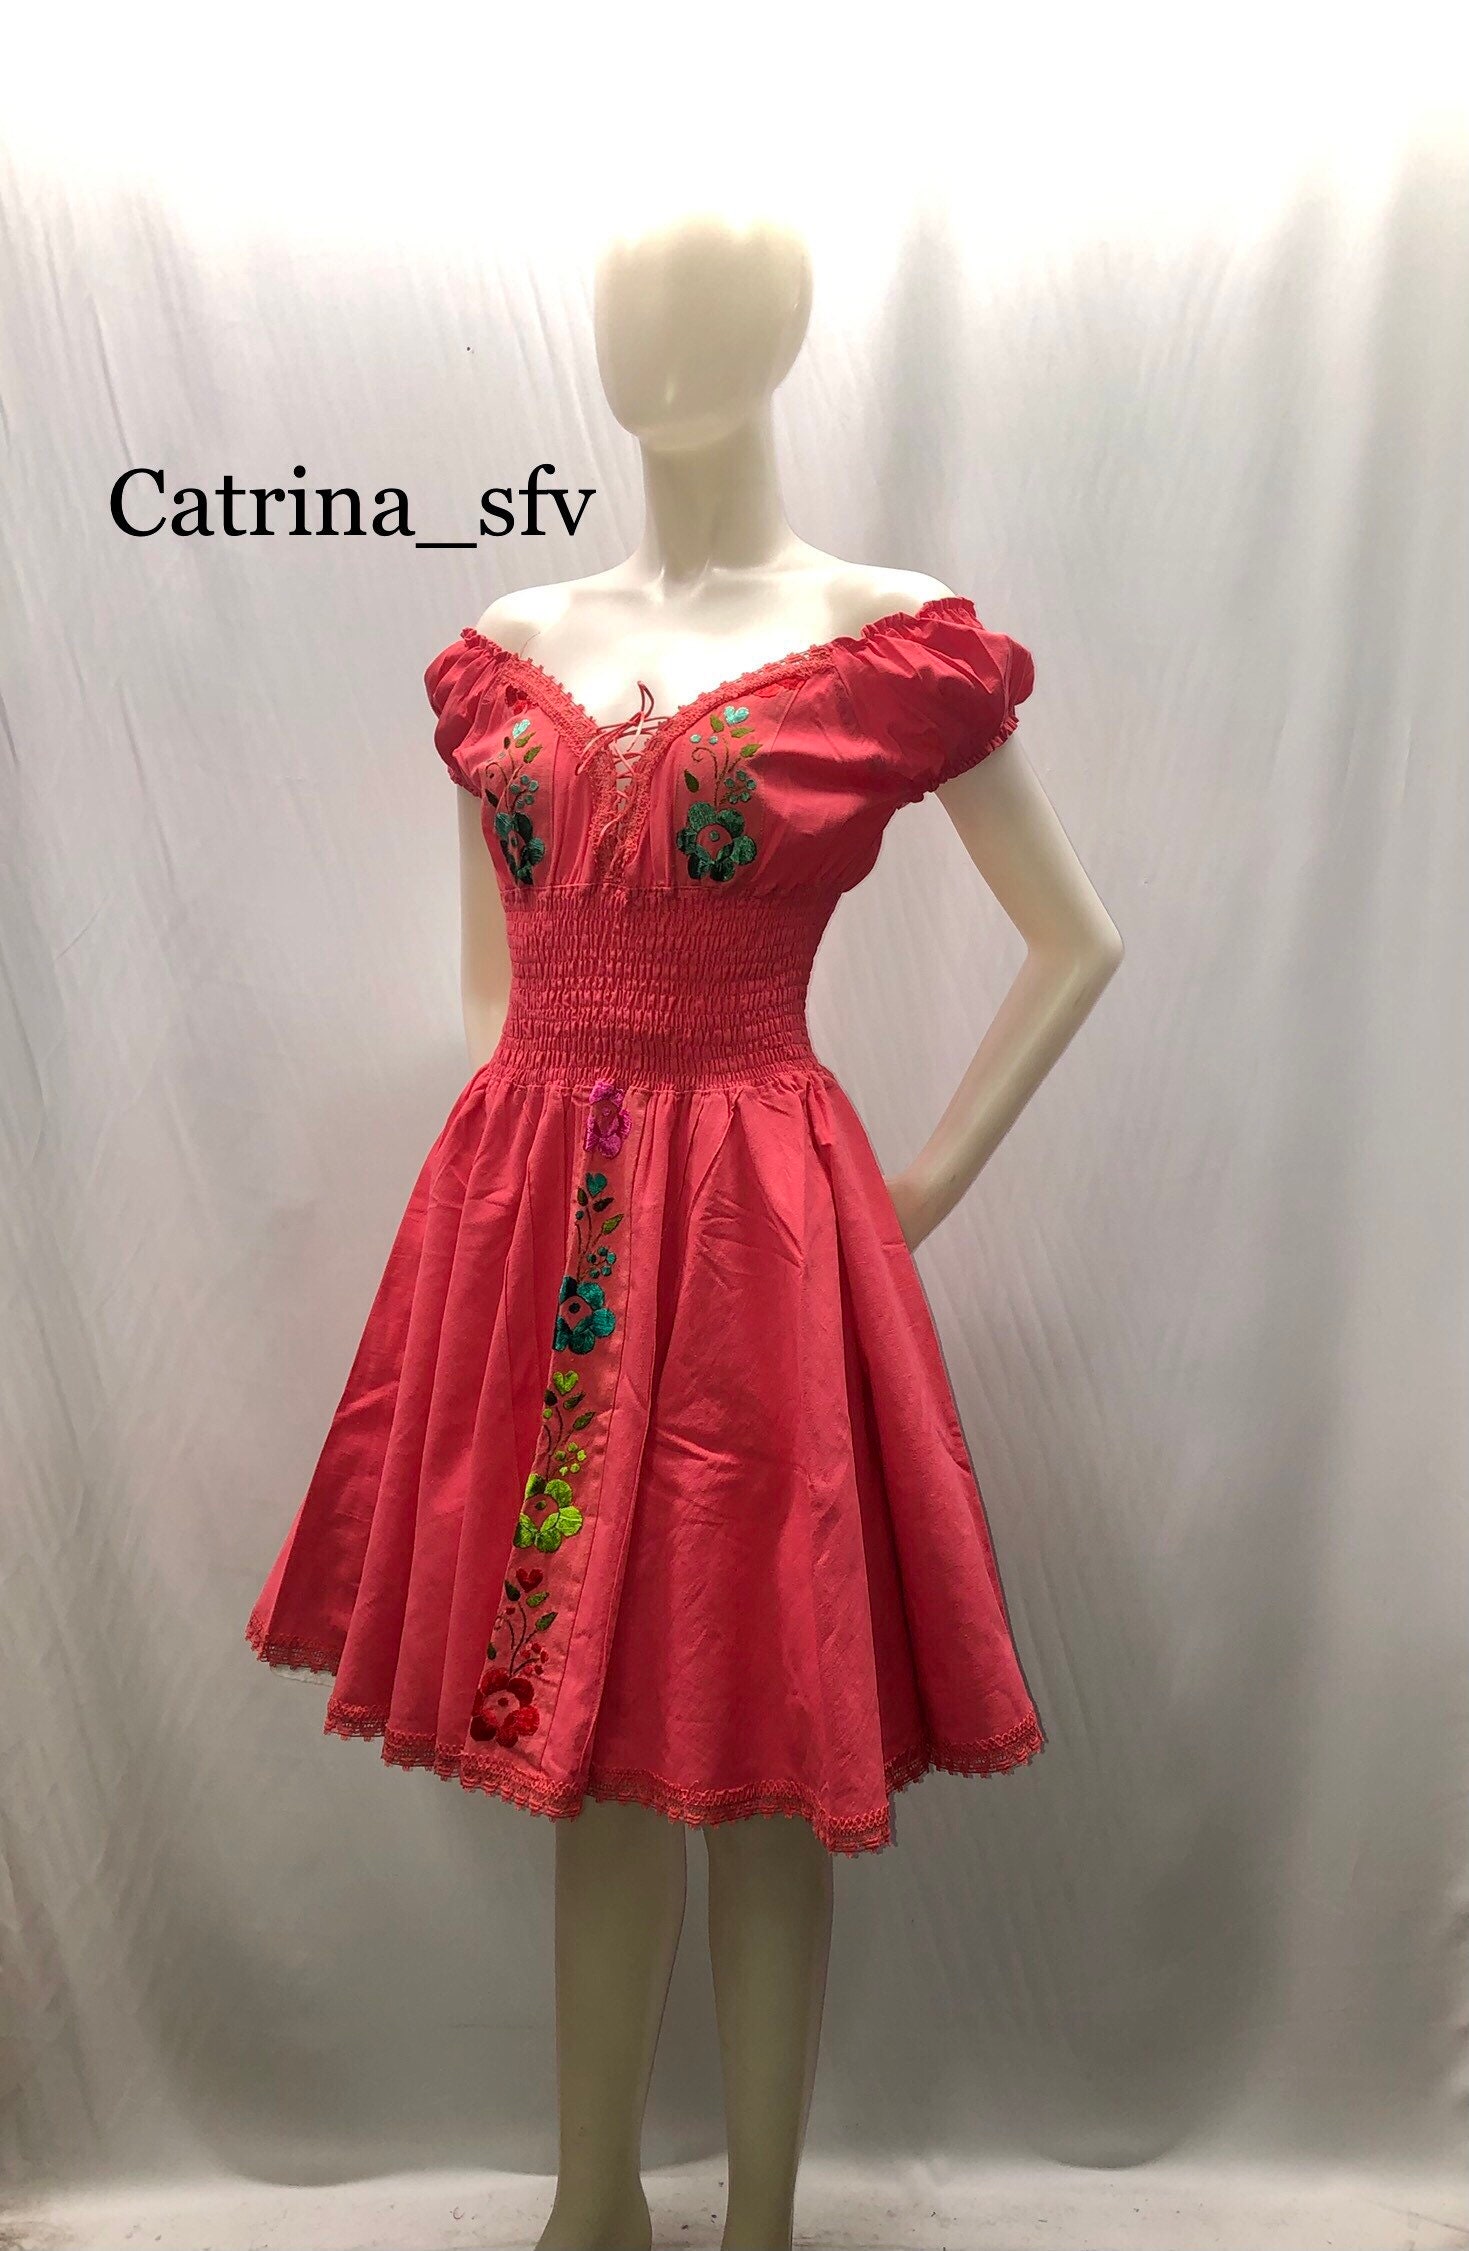 VESTIDO vestido corto, artesanal, vestido bordado, vestido típico, vestido regional, para una fiesta mexicana, ENVÍO GRATIS EN ESTADOS